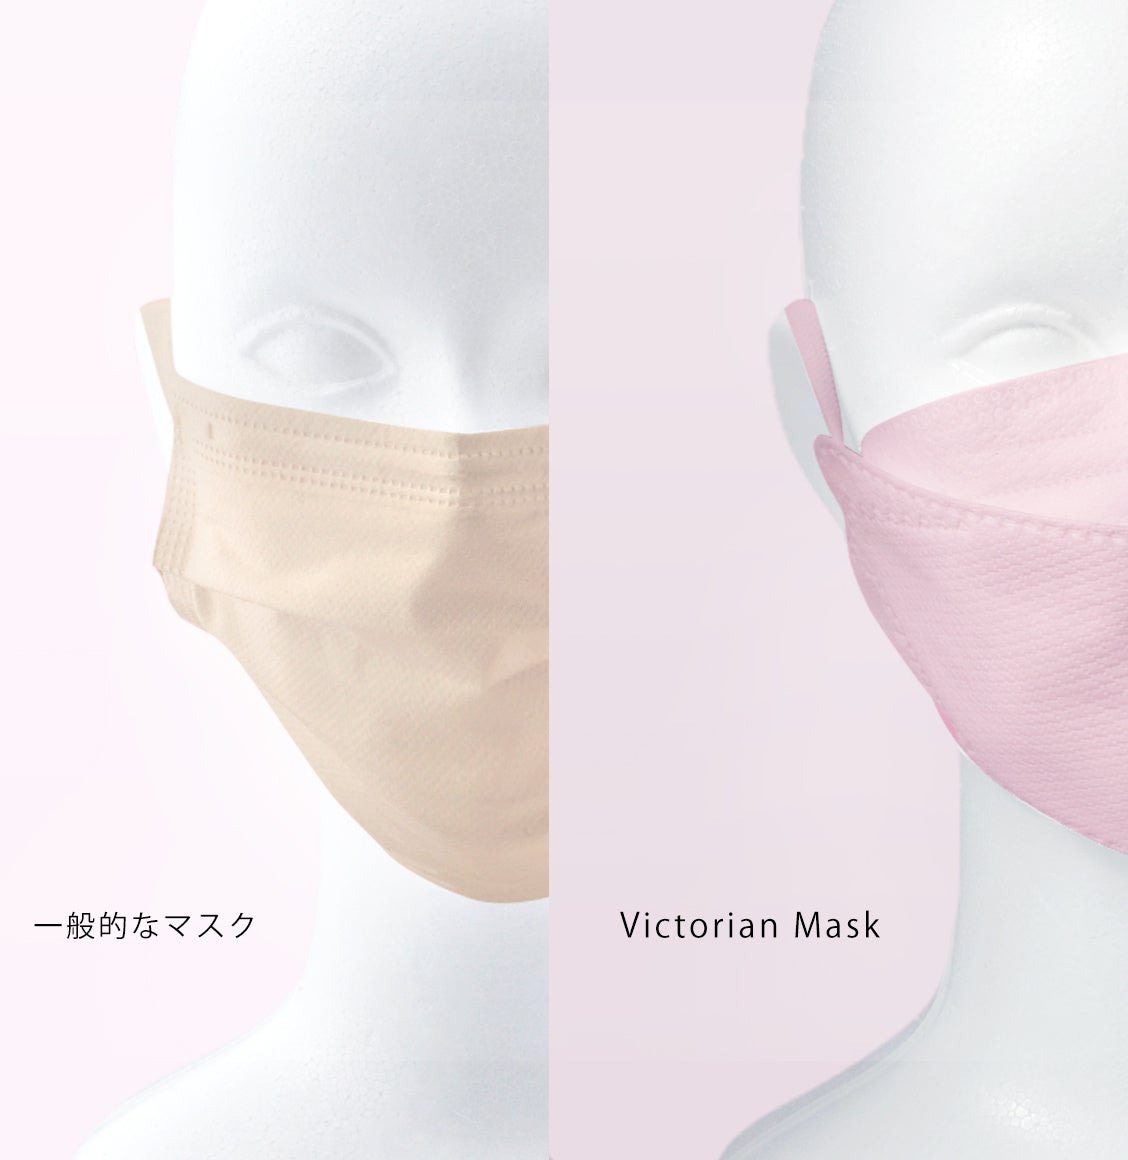 【1/31まで】安心安全の日本工場生産「Victorian Mask Series」が最大54%OFFのセールを開始。小顔魅せマスク...